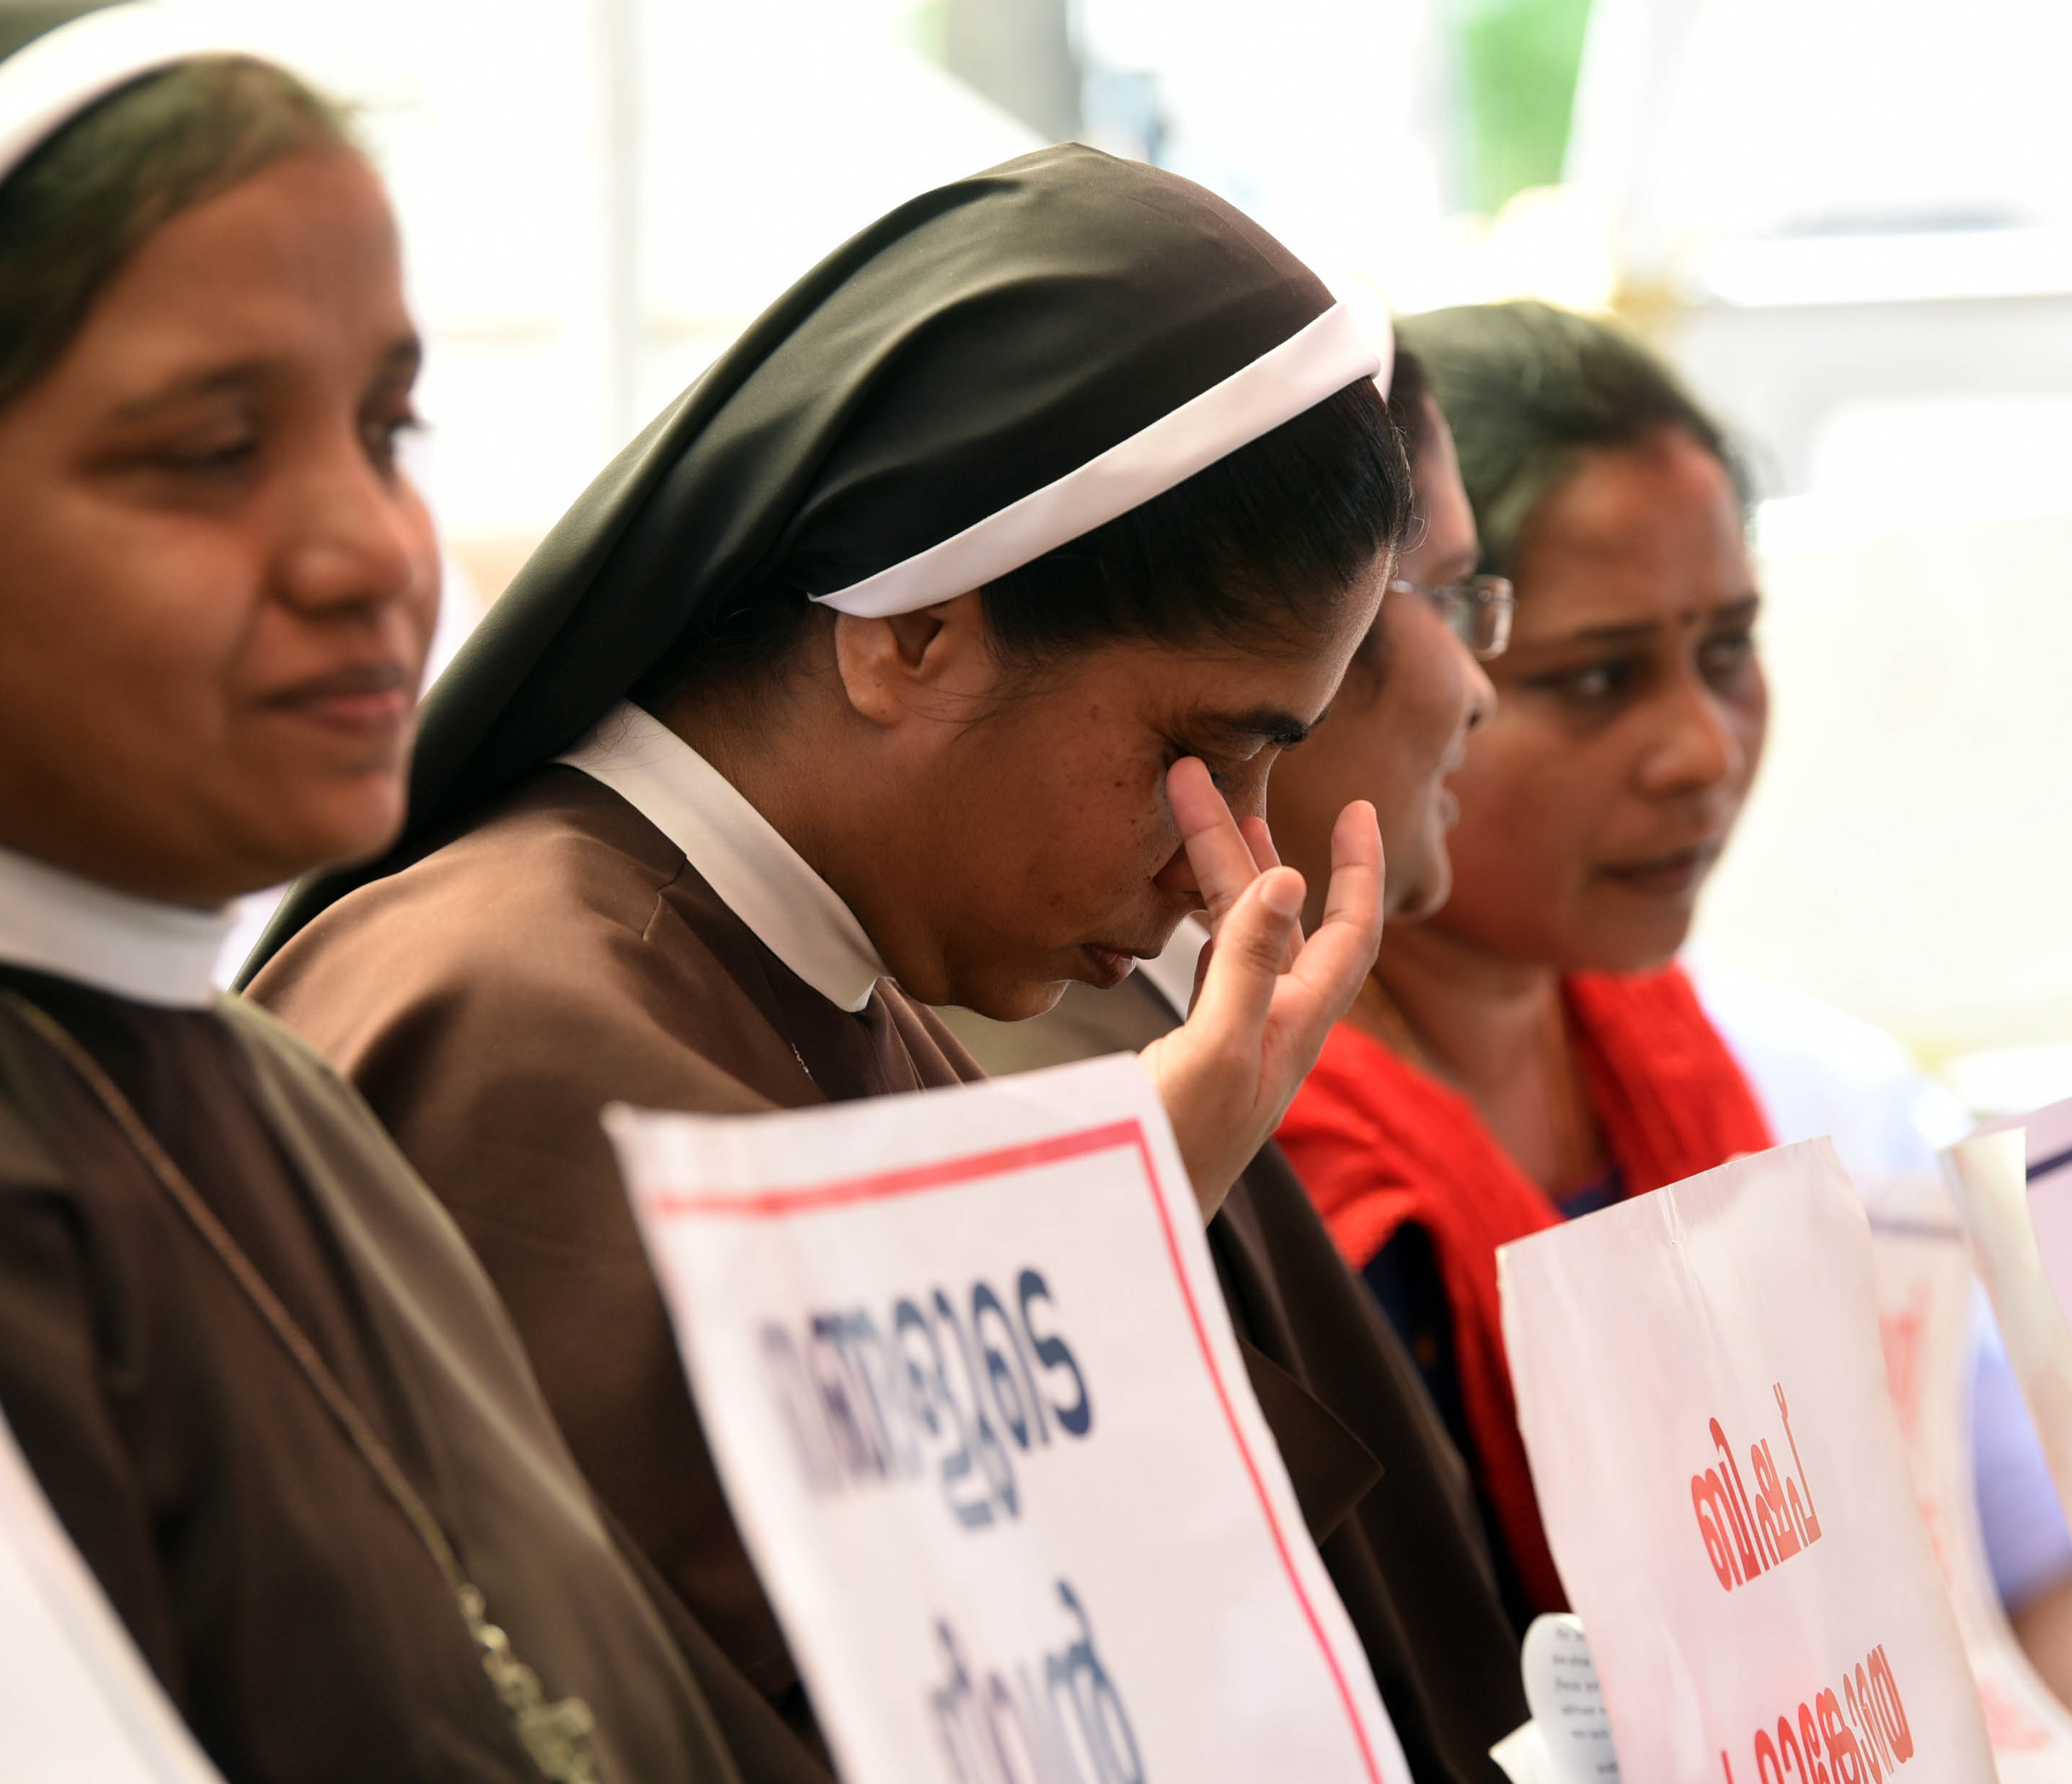 Váratlanul meghalt az a pap, aki tanúskodott volna az apácával erőszakoskodó indiai püspök ügyében